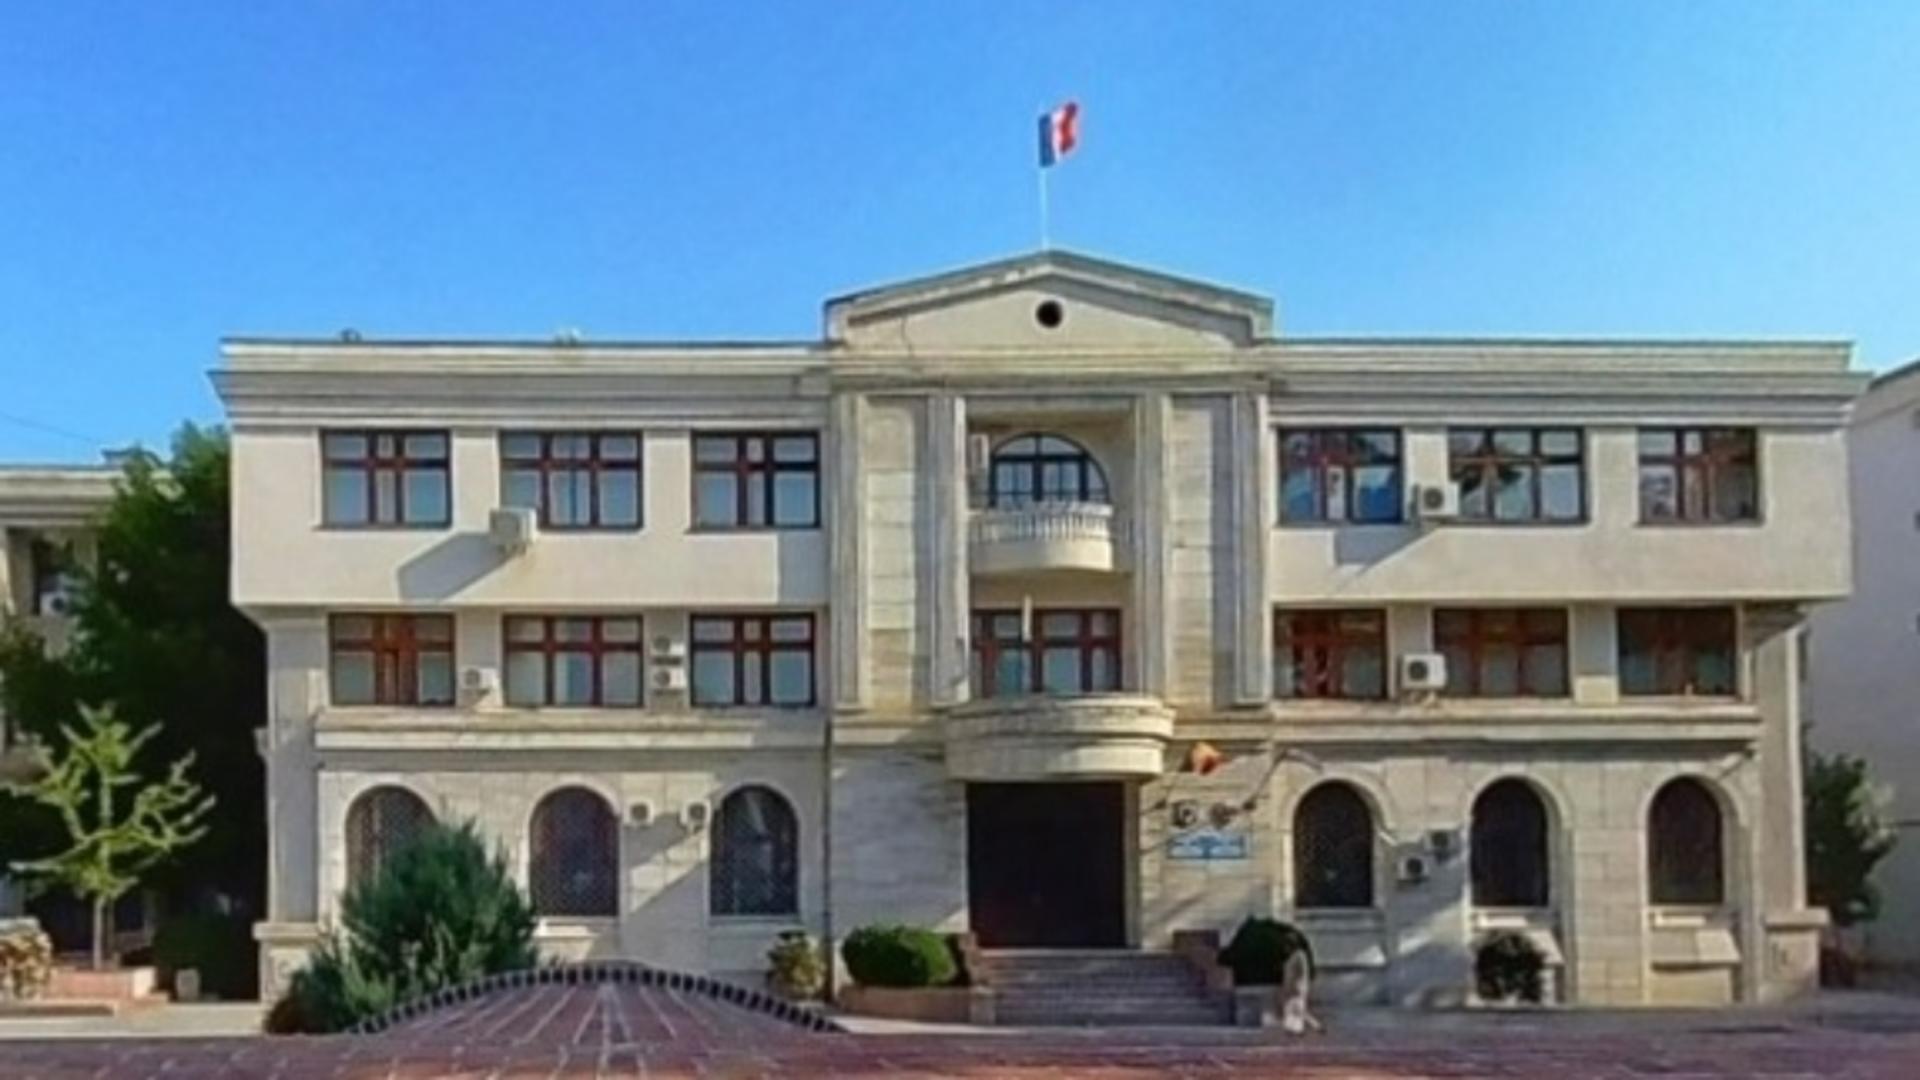 Risipă de bani publici: Primăria Focșani a dat 100.000 de euro pentru trimiterea unor plicuri care s-au întors la destinație